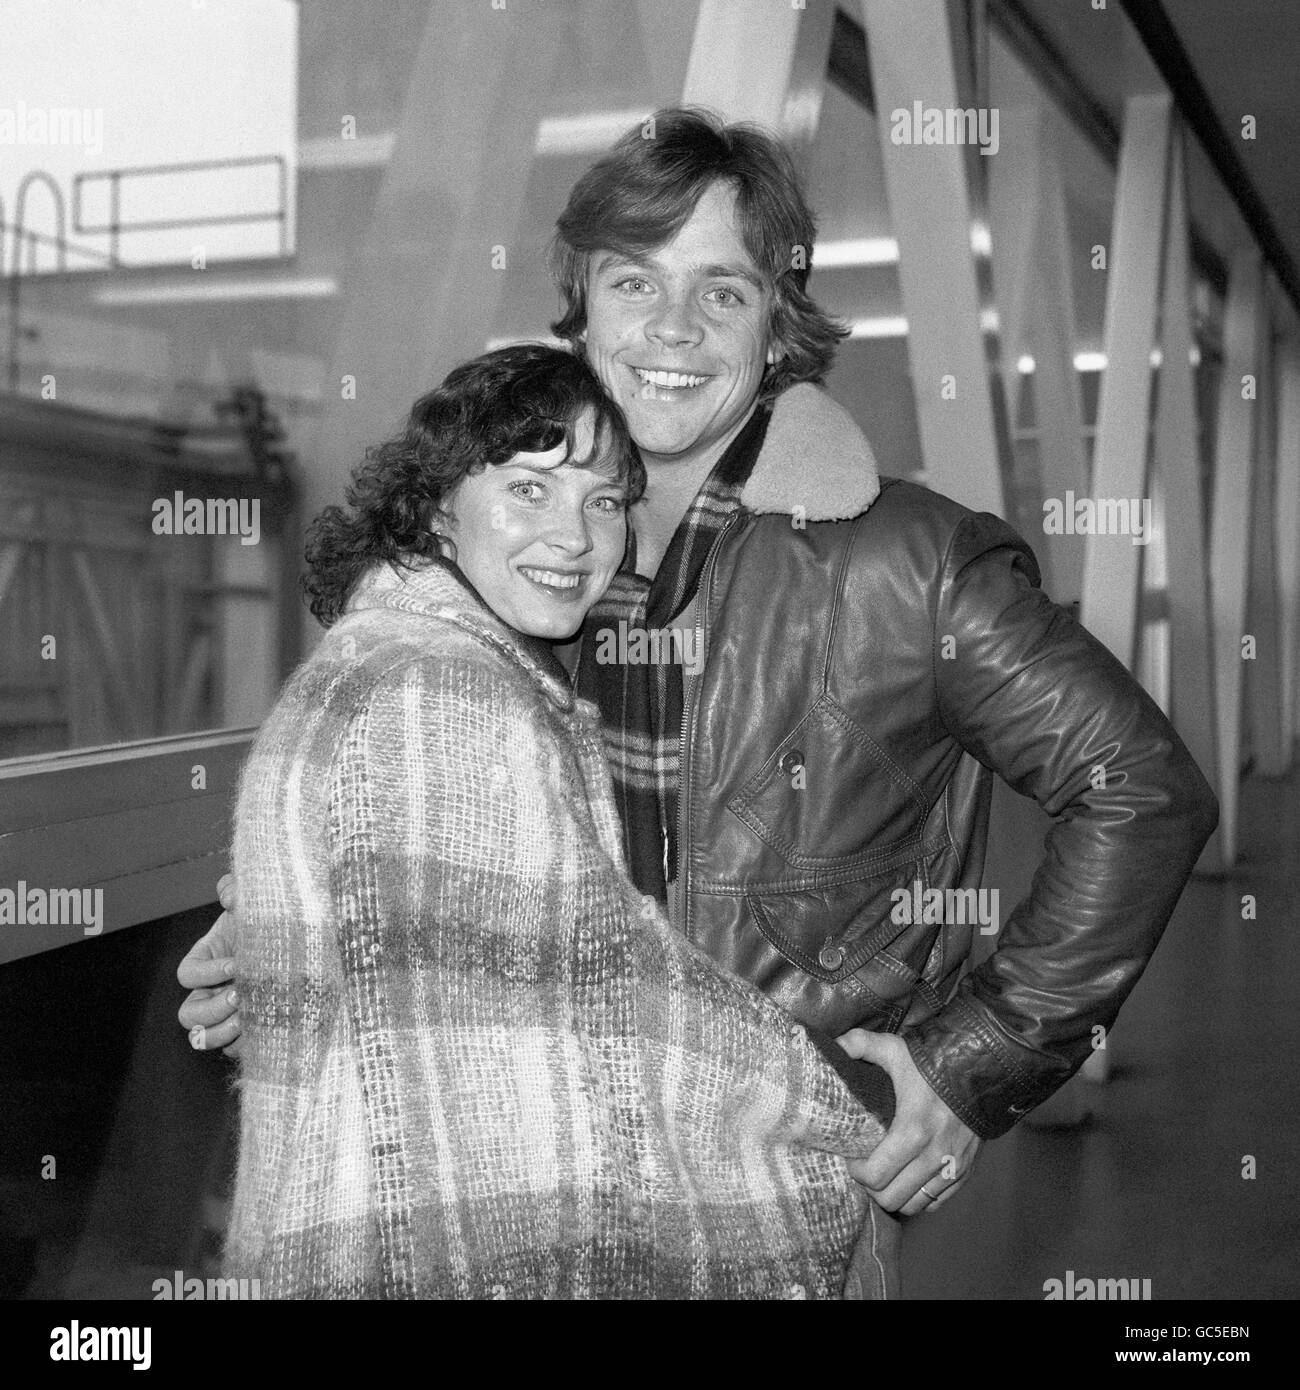 Mark Hamill, Luke Skywalker in Star Wars, am Flughafen Heathrow mit seiner Frau Marilou. Hamill war in London, um die Arbeit an der Star Wars-Fortsetzung The Empire Strikes Back zu beginnen. Stockfoto